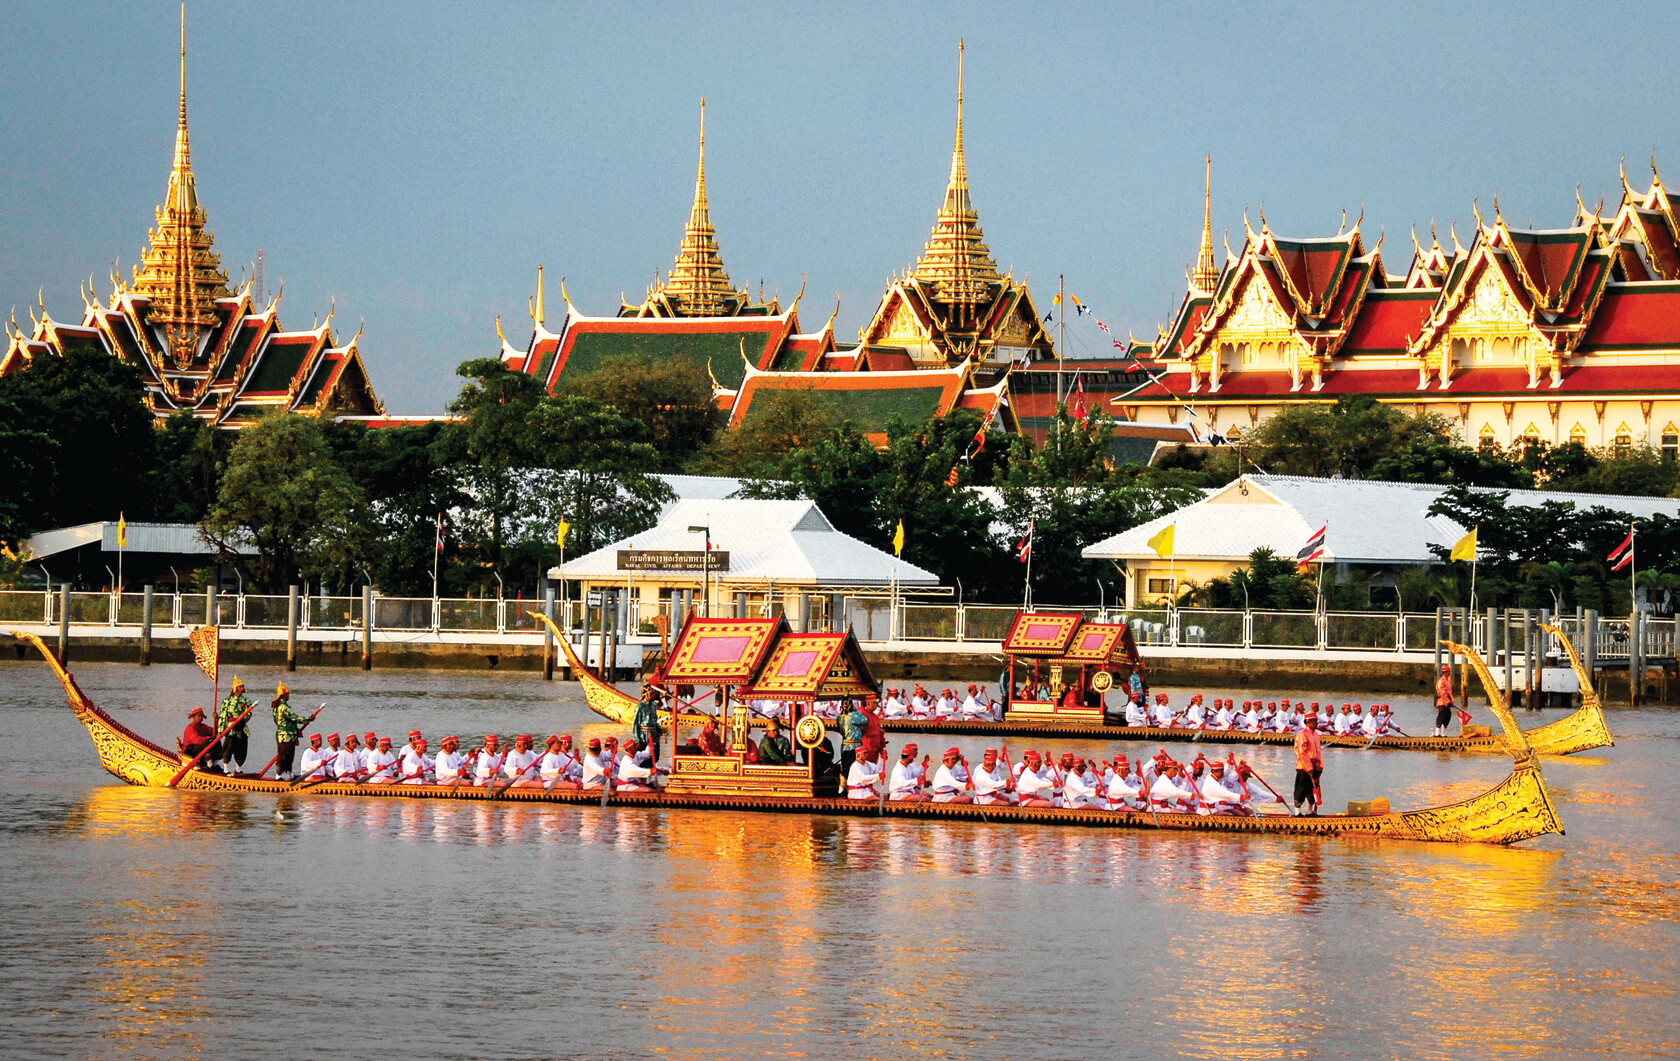 Bangkok Boat in front of Palace